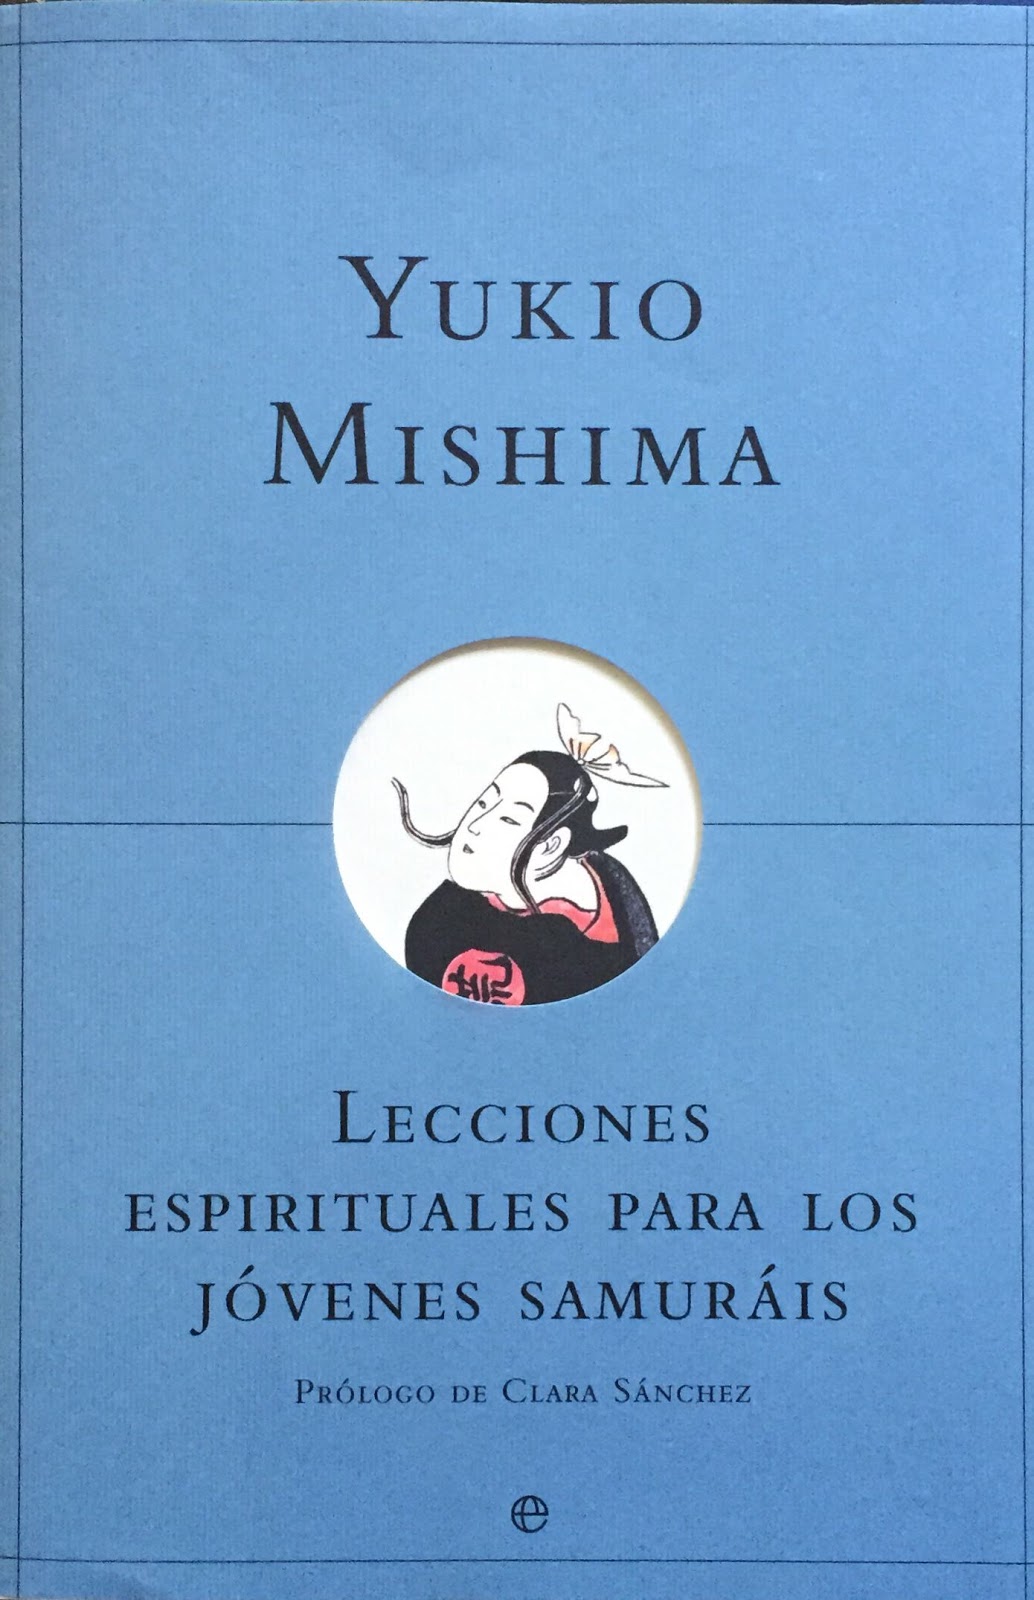 Lecciones espirituales para los jóvenes samuráis, de Yukio Mishima